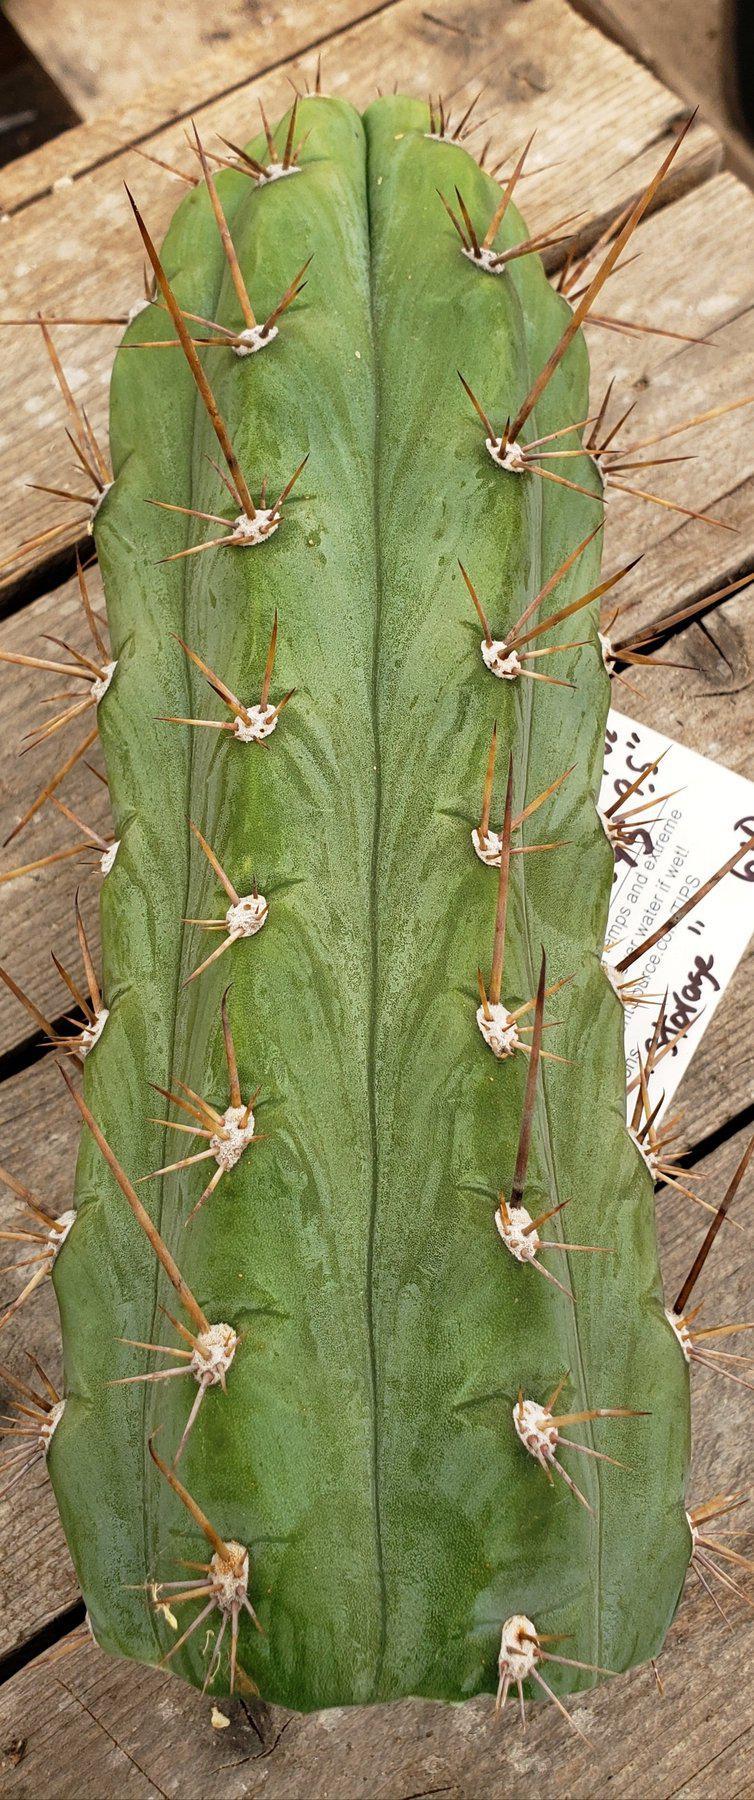 #EC45 EXACT Trichocereus Peruvianus "Storage Yard" Cactus CUTTING 9-10"-Cactus - Large - Exact-The Succulent Source